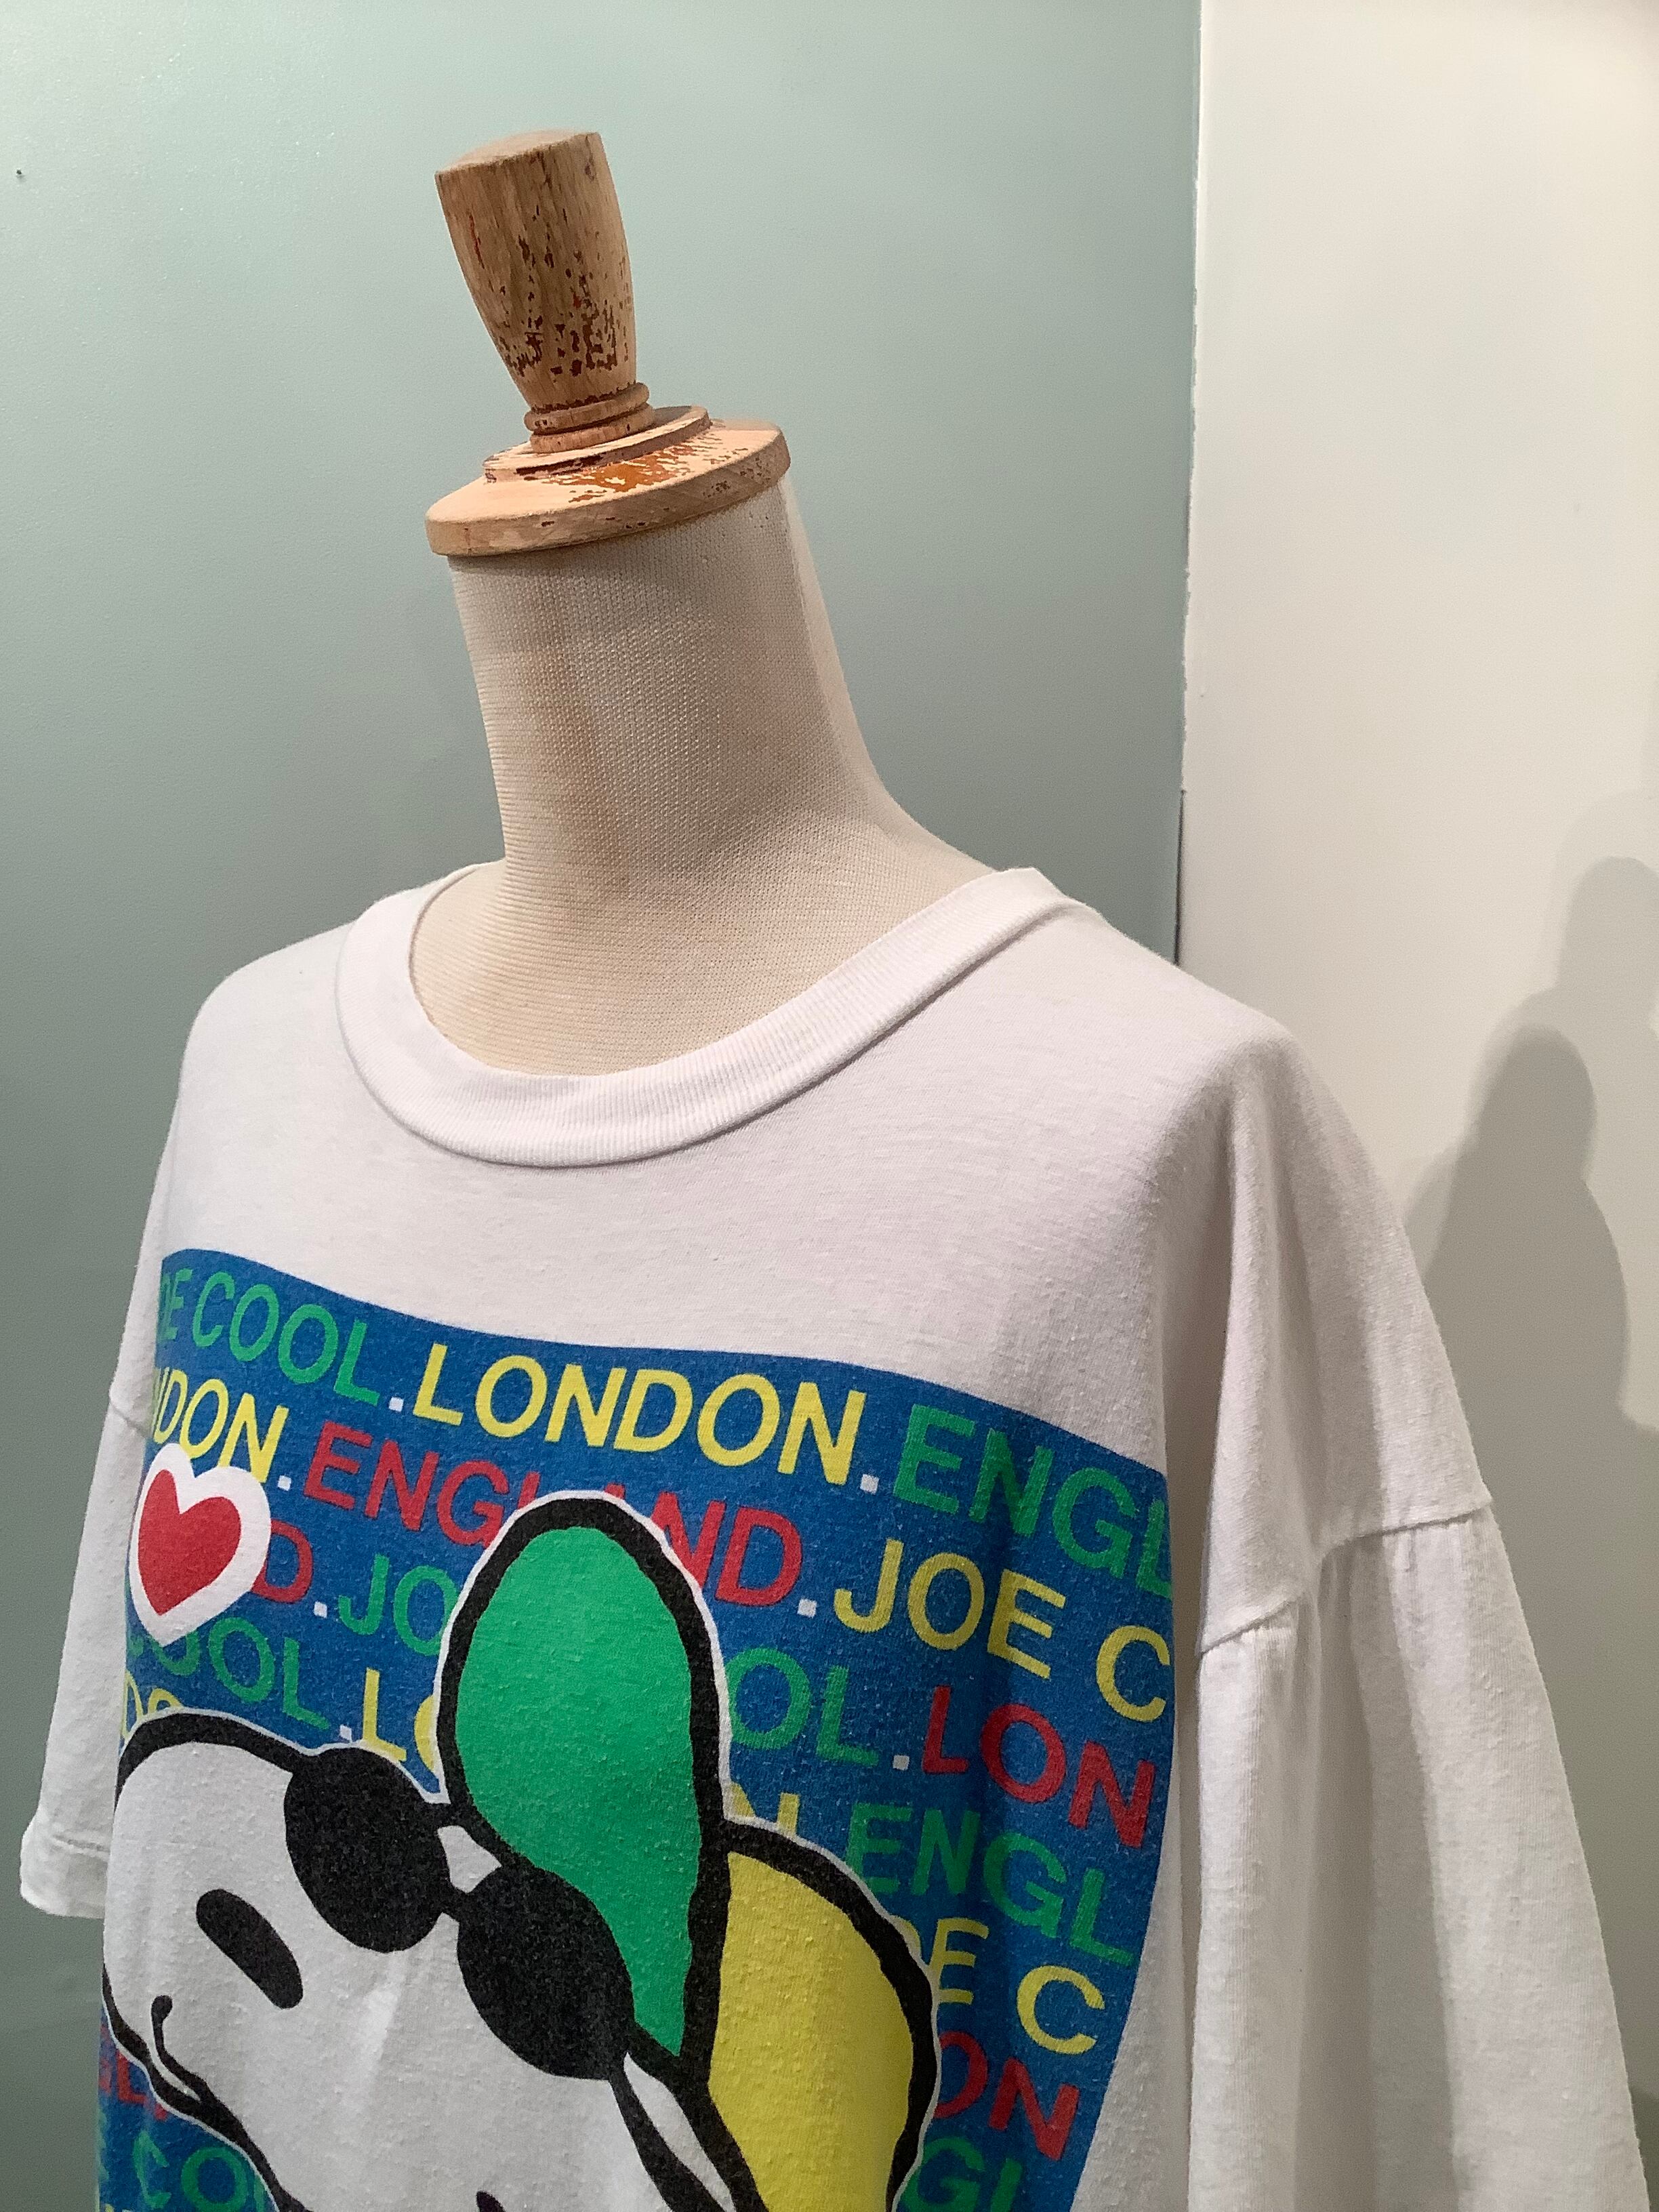 年代〜 "JOE COOL" スヌーピープリントTシャツ   Used & Vintage